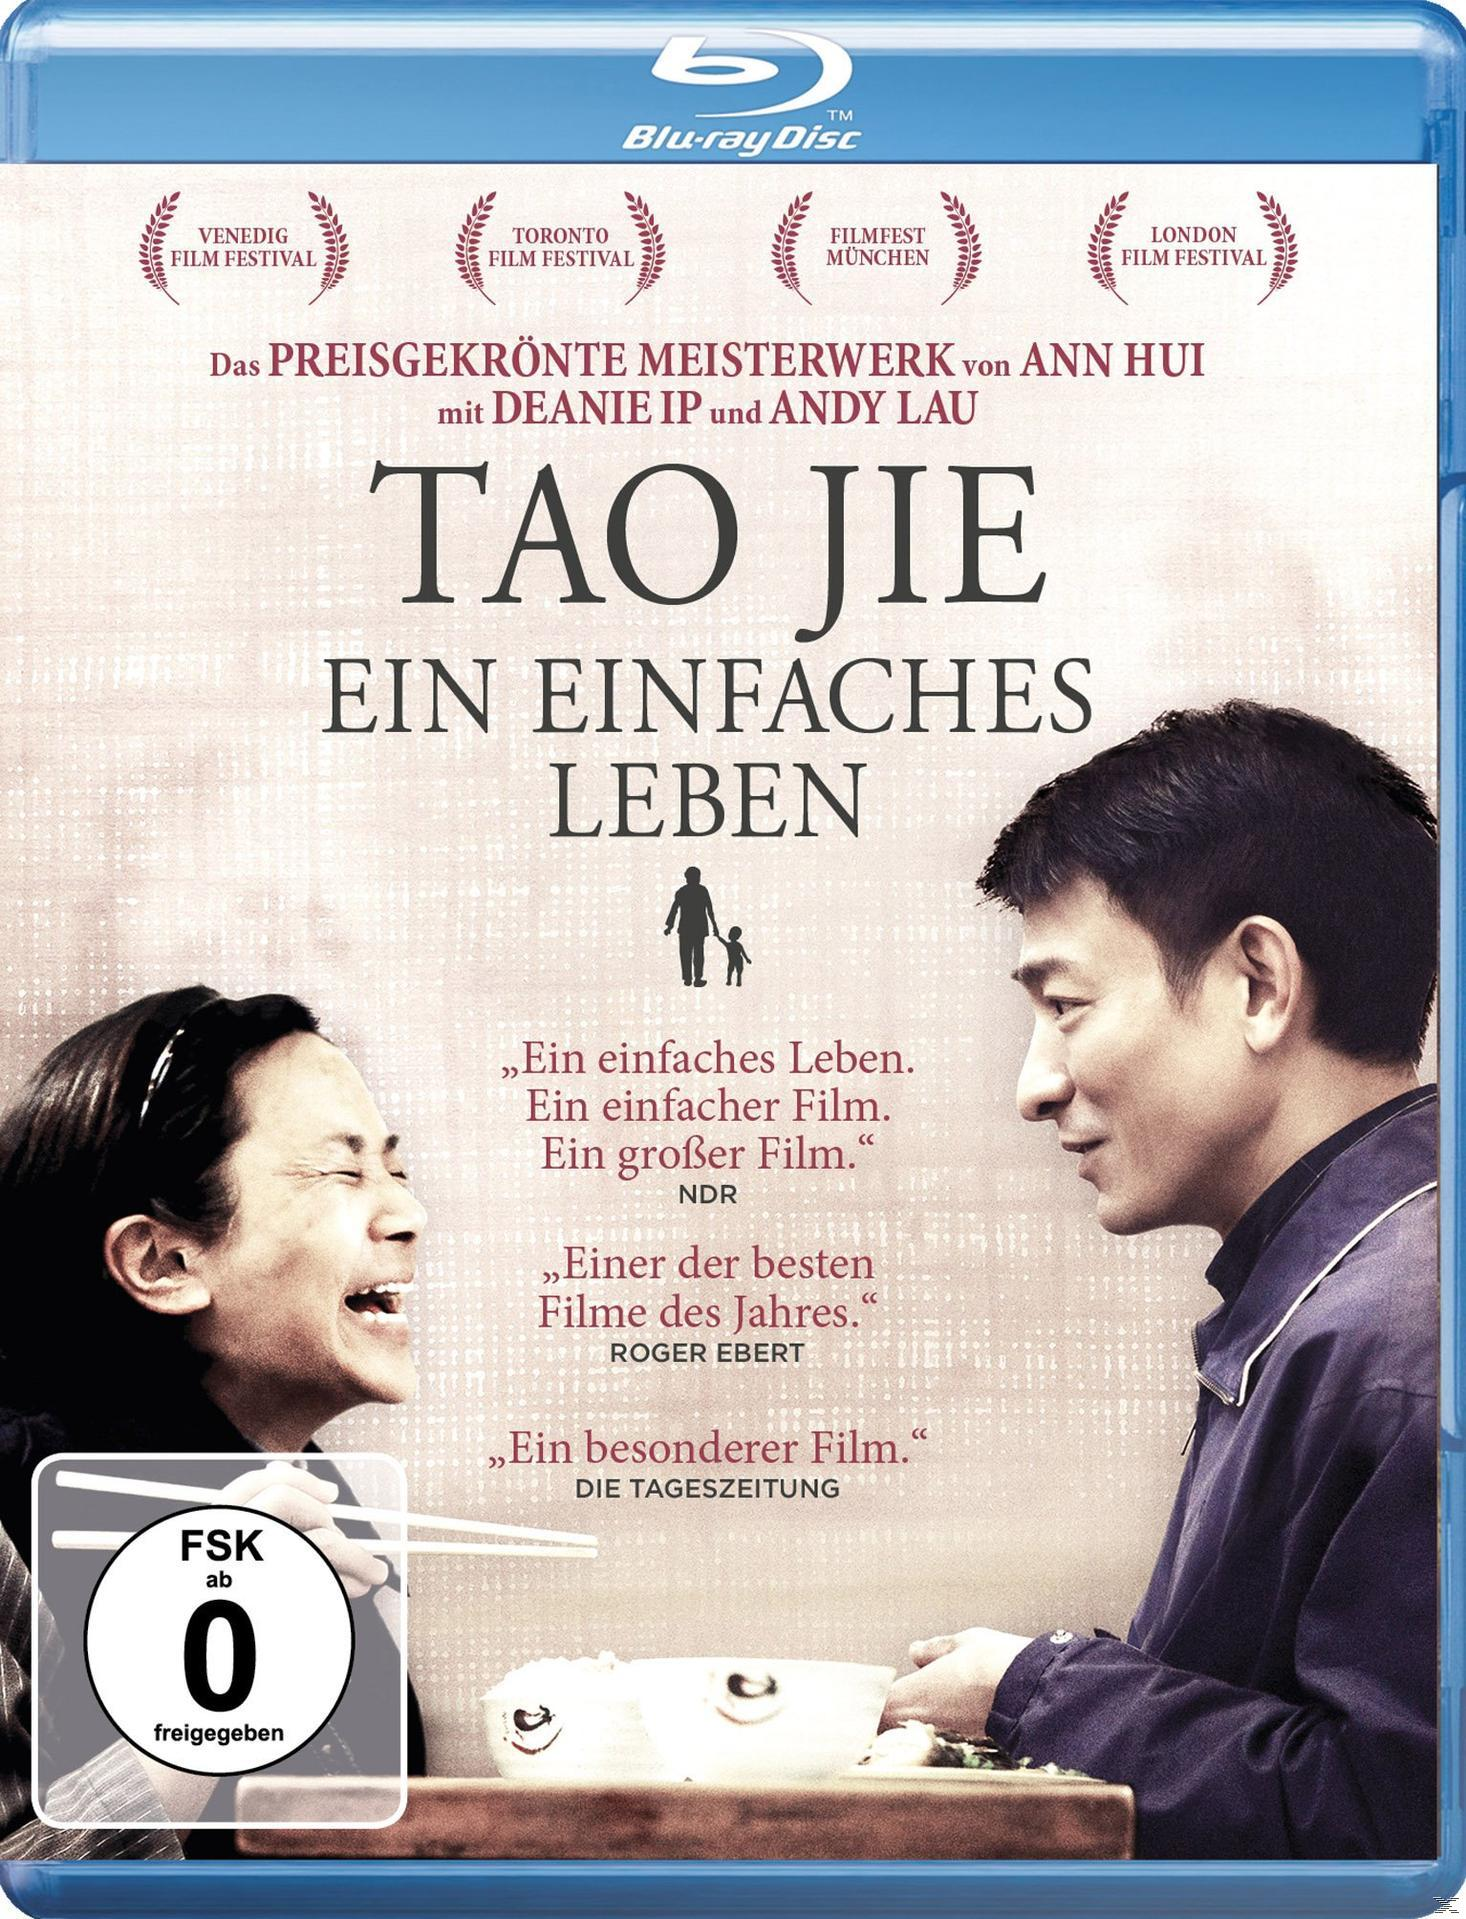 - Ein einfaches Tao Blu-ray Jie Leben